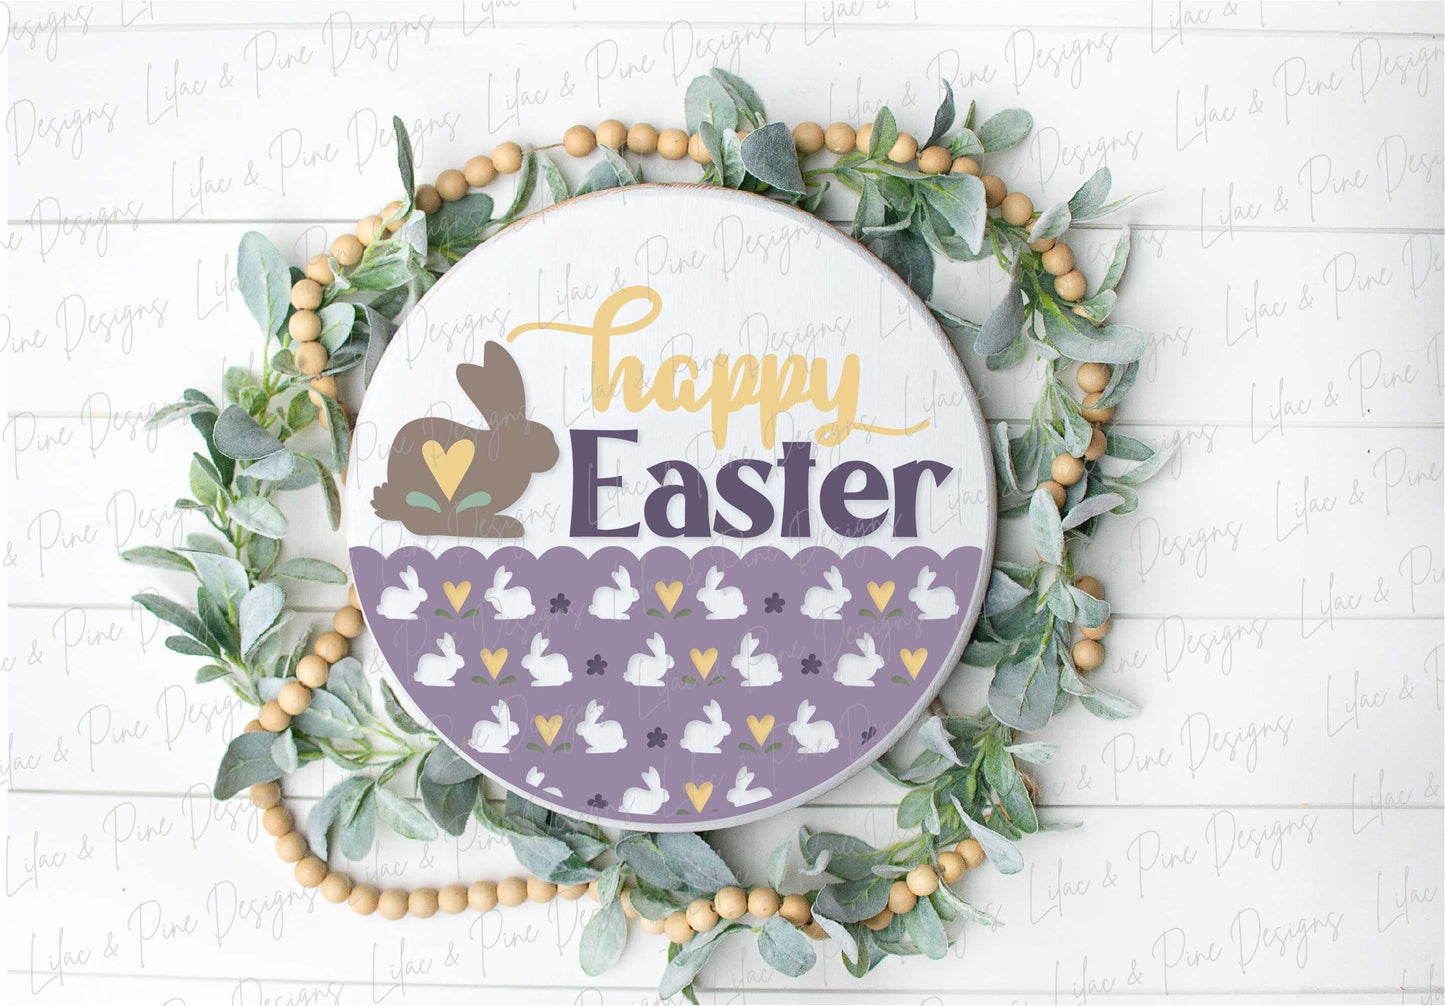 happy Easter sign SVG, Easter bunny door hanger, Easter Welcome sign SVG, cottage core Easter decor, Glowforge SVG, laser cut file